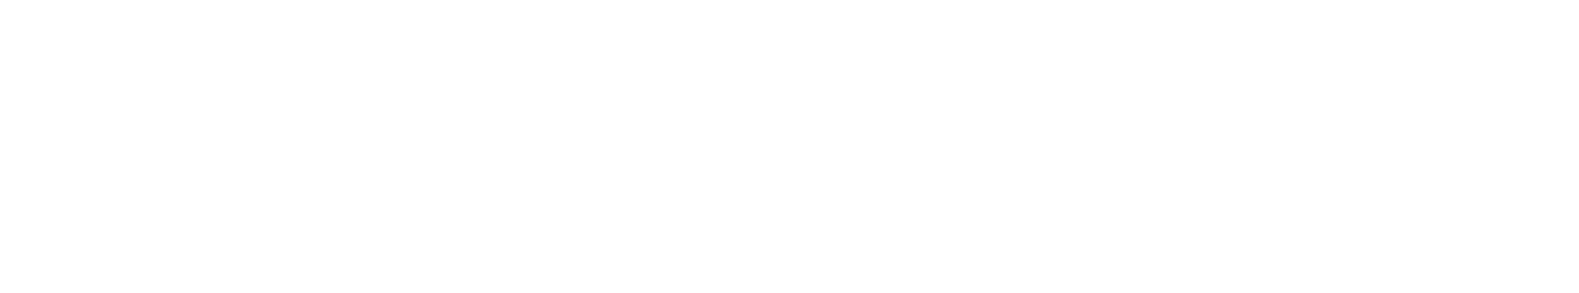 NetEase logo grand pour les fonds sombres (PNG transparent)